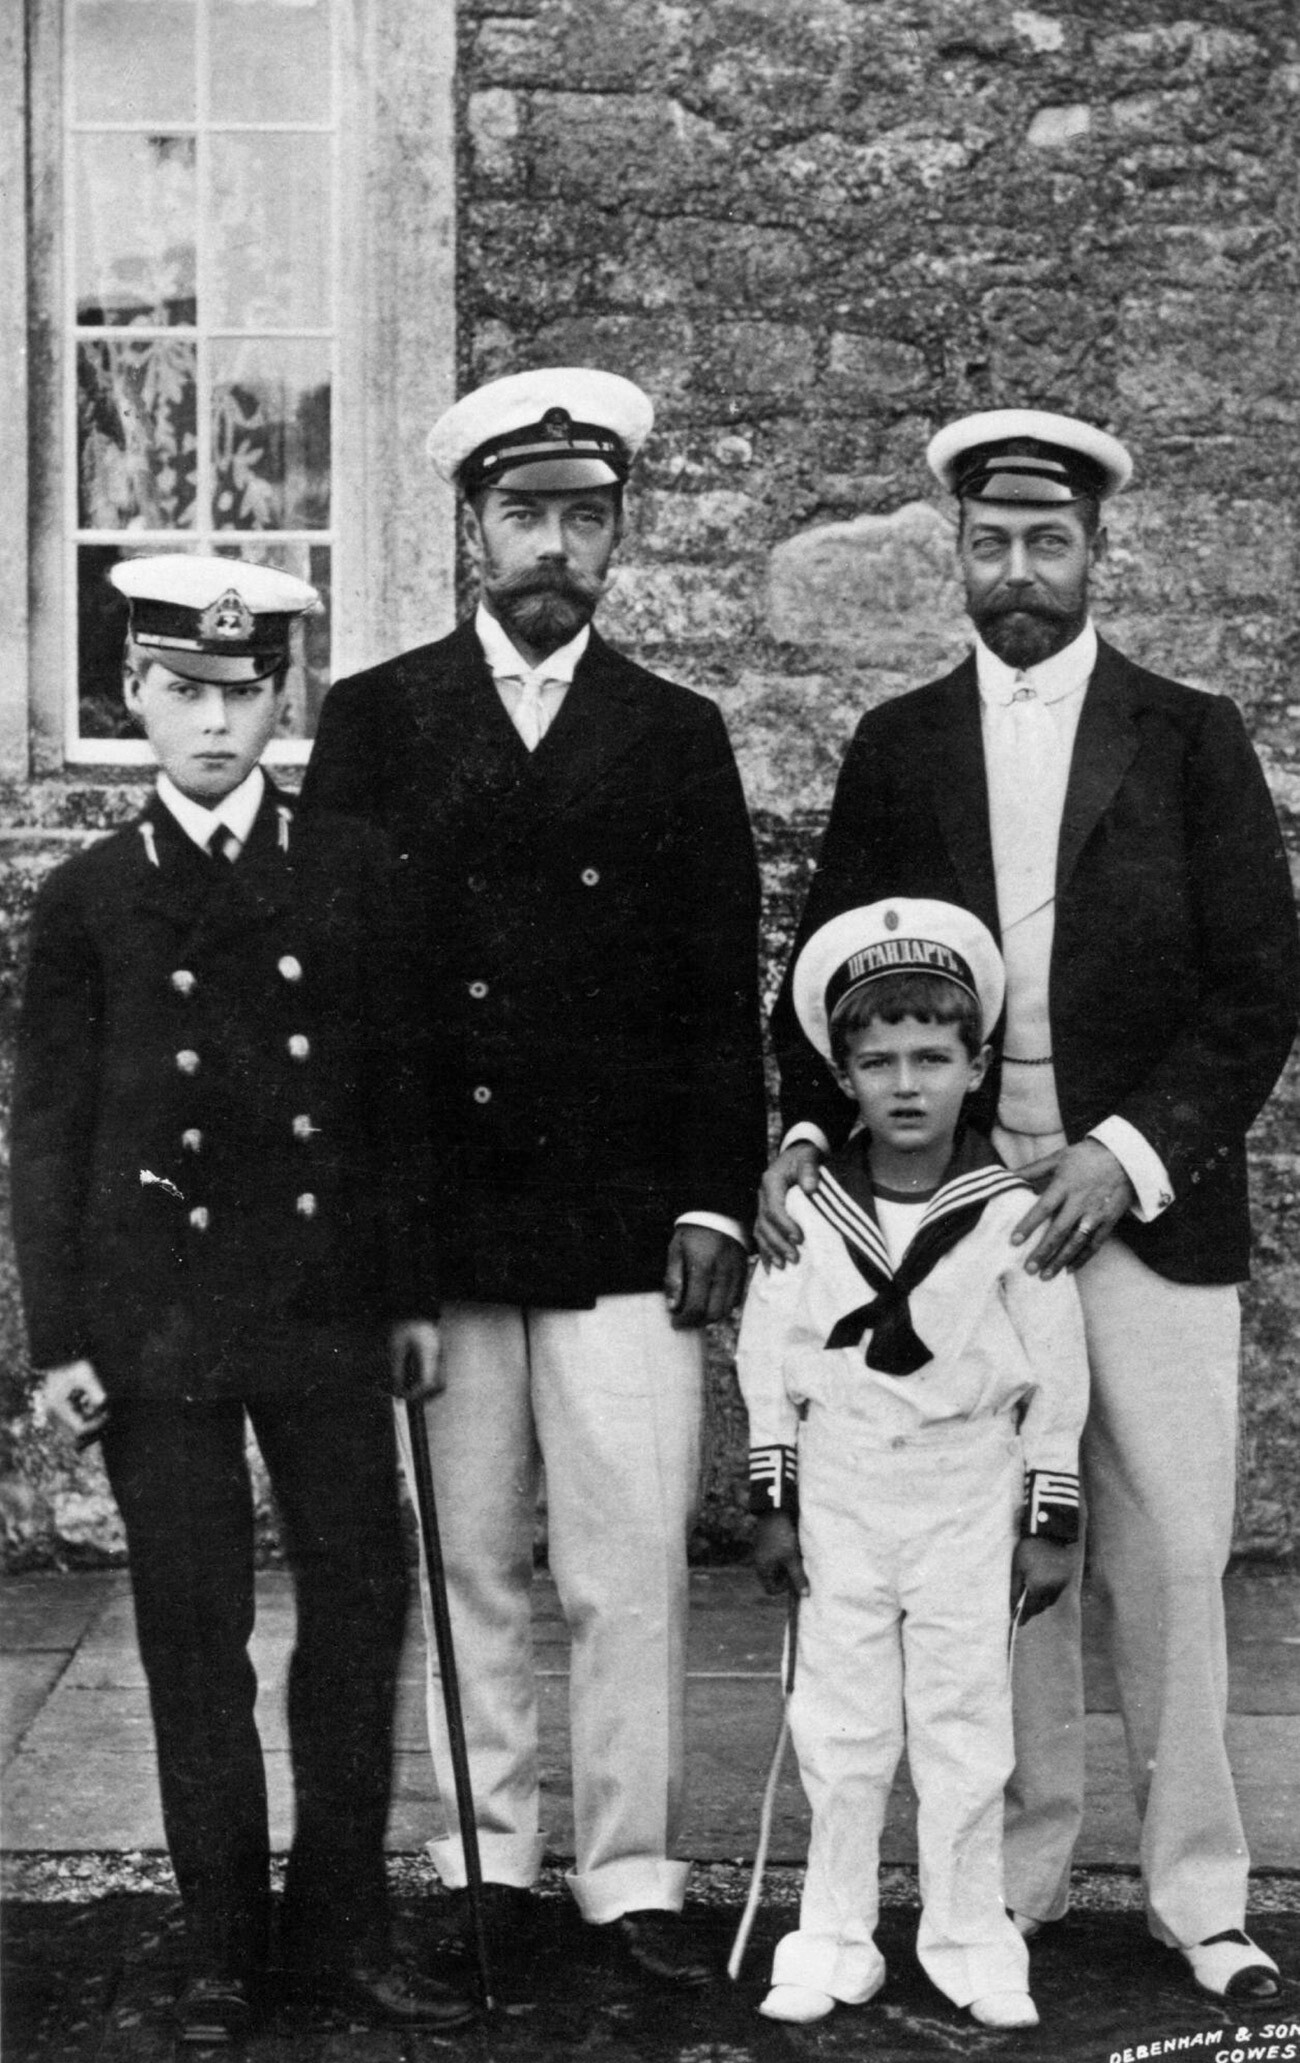 Sepupu kerajaan dan putra mereka: dari kiri ke kanan, Pangeran Edward, Nikolay II, Pangeran Alexei, dan George V.